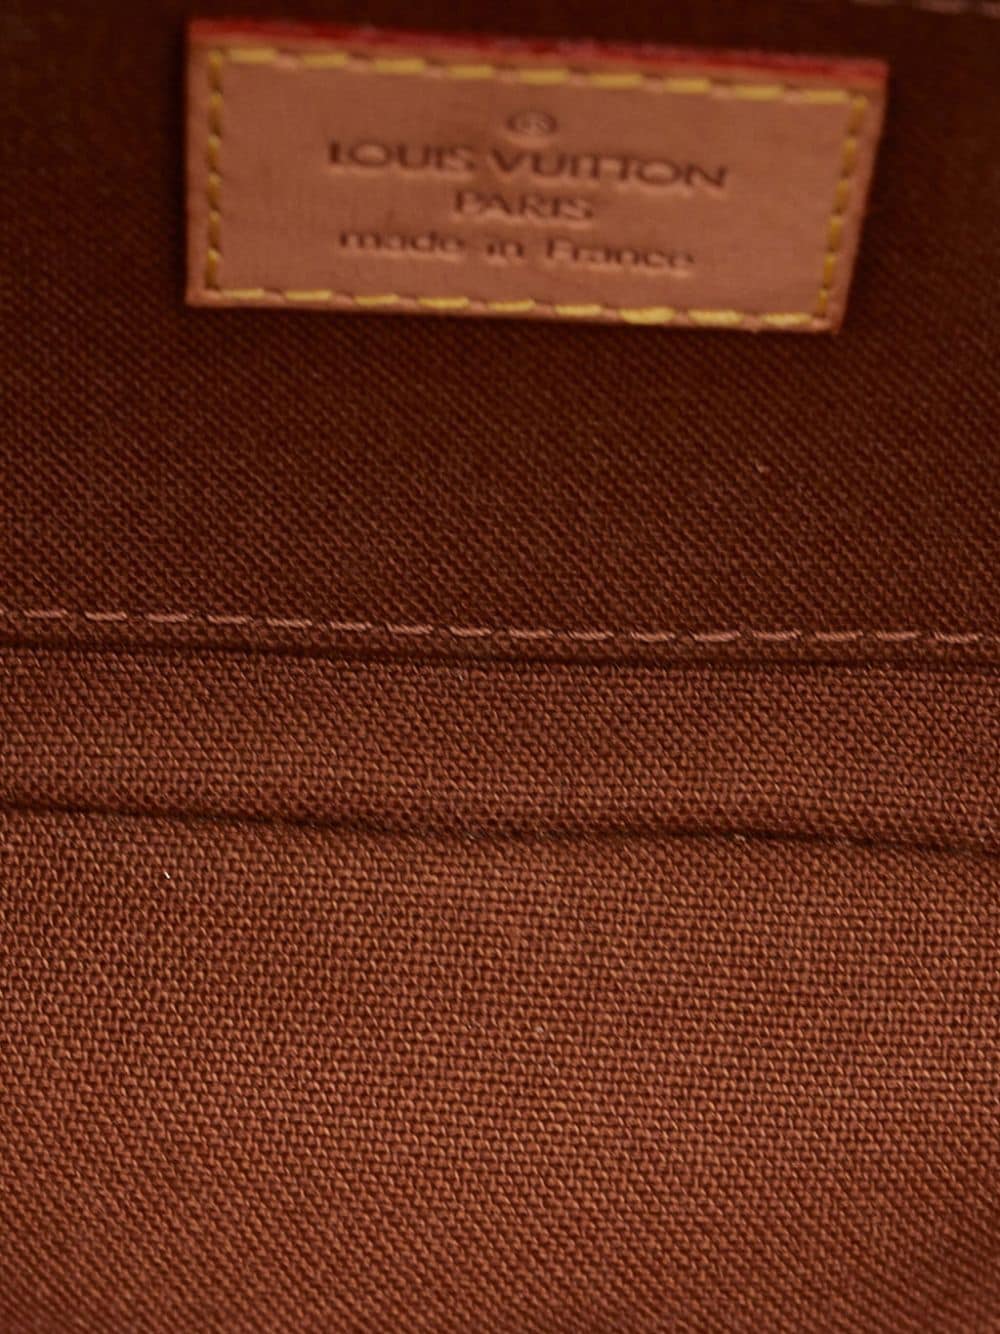 Louis Vuitton Pochette Marelle Monogram Belt Bag on SALE